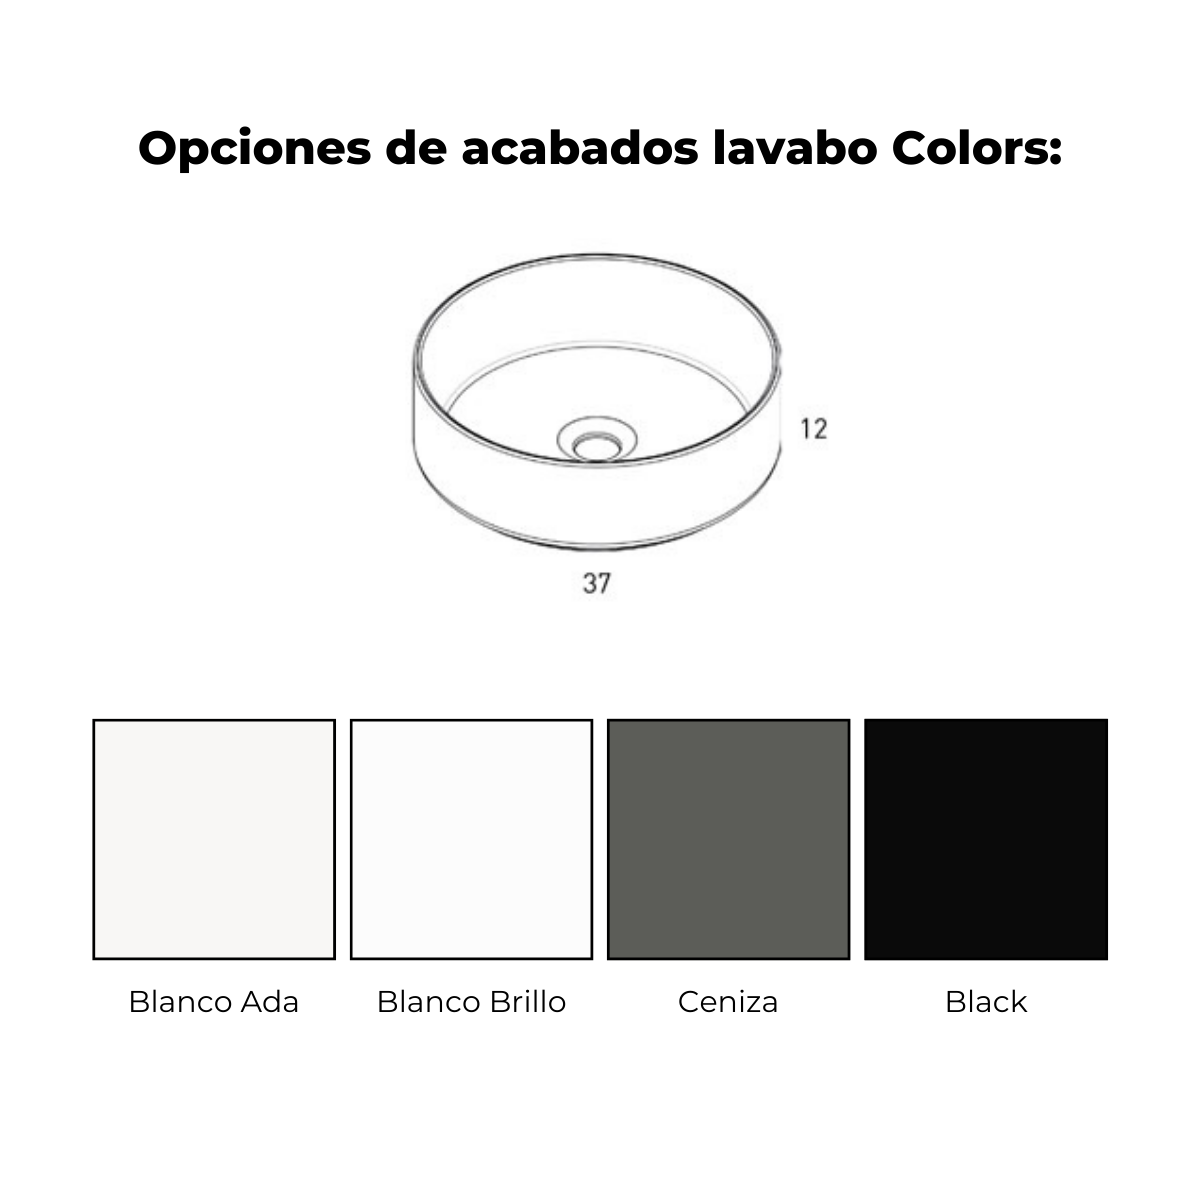 lavabo colors negro 1c